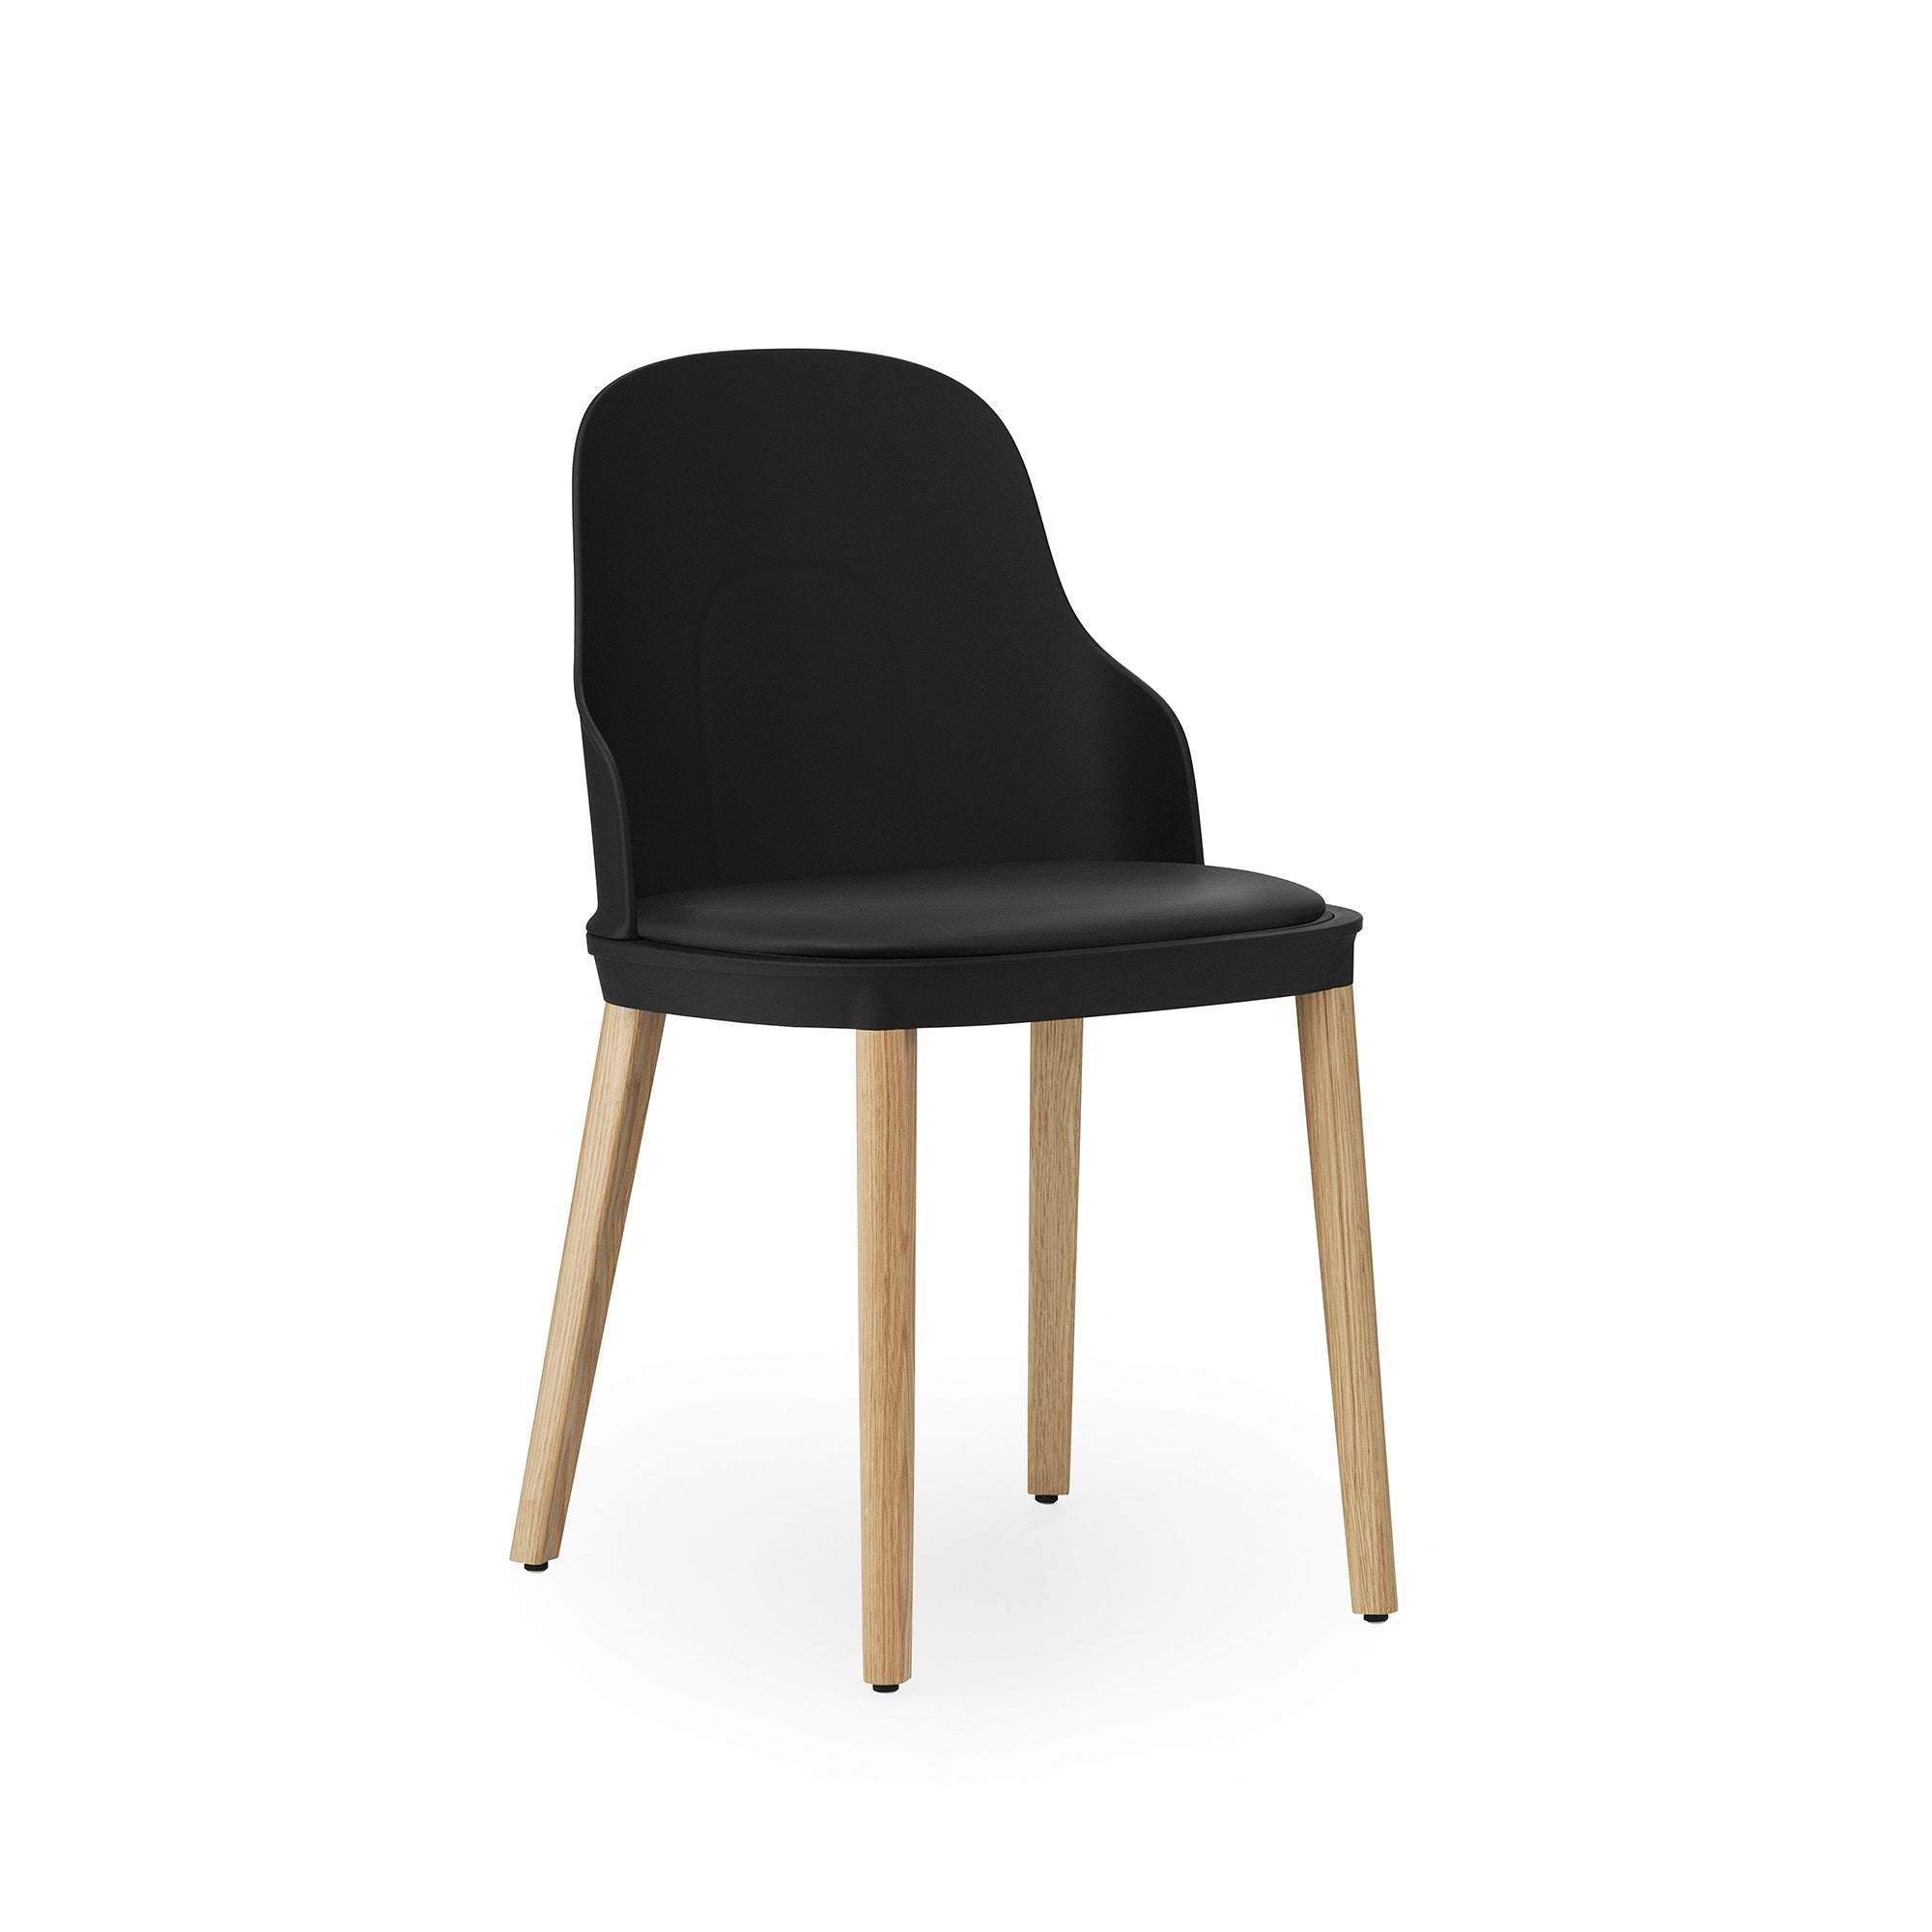 Allez Chair, scaun cu picioare din lemn și șezutul tapițat